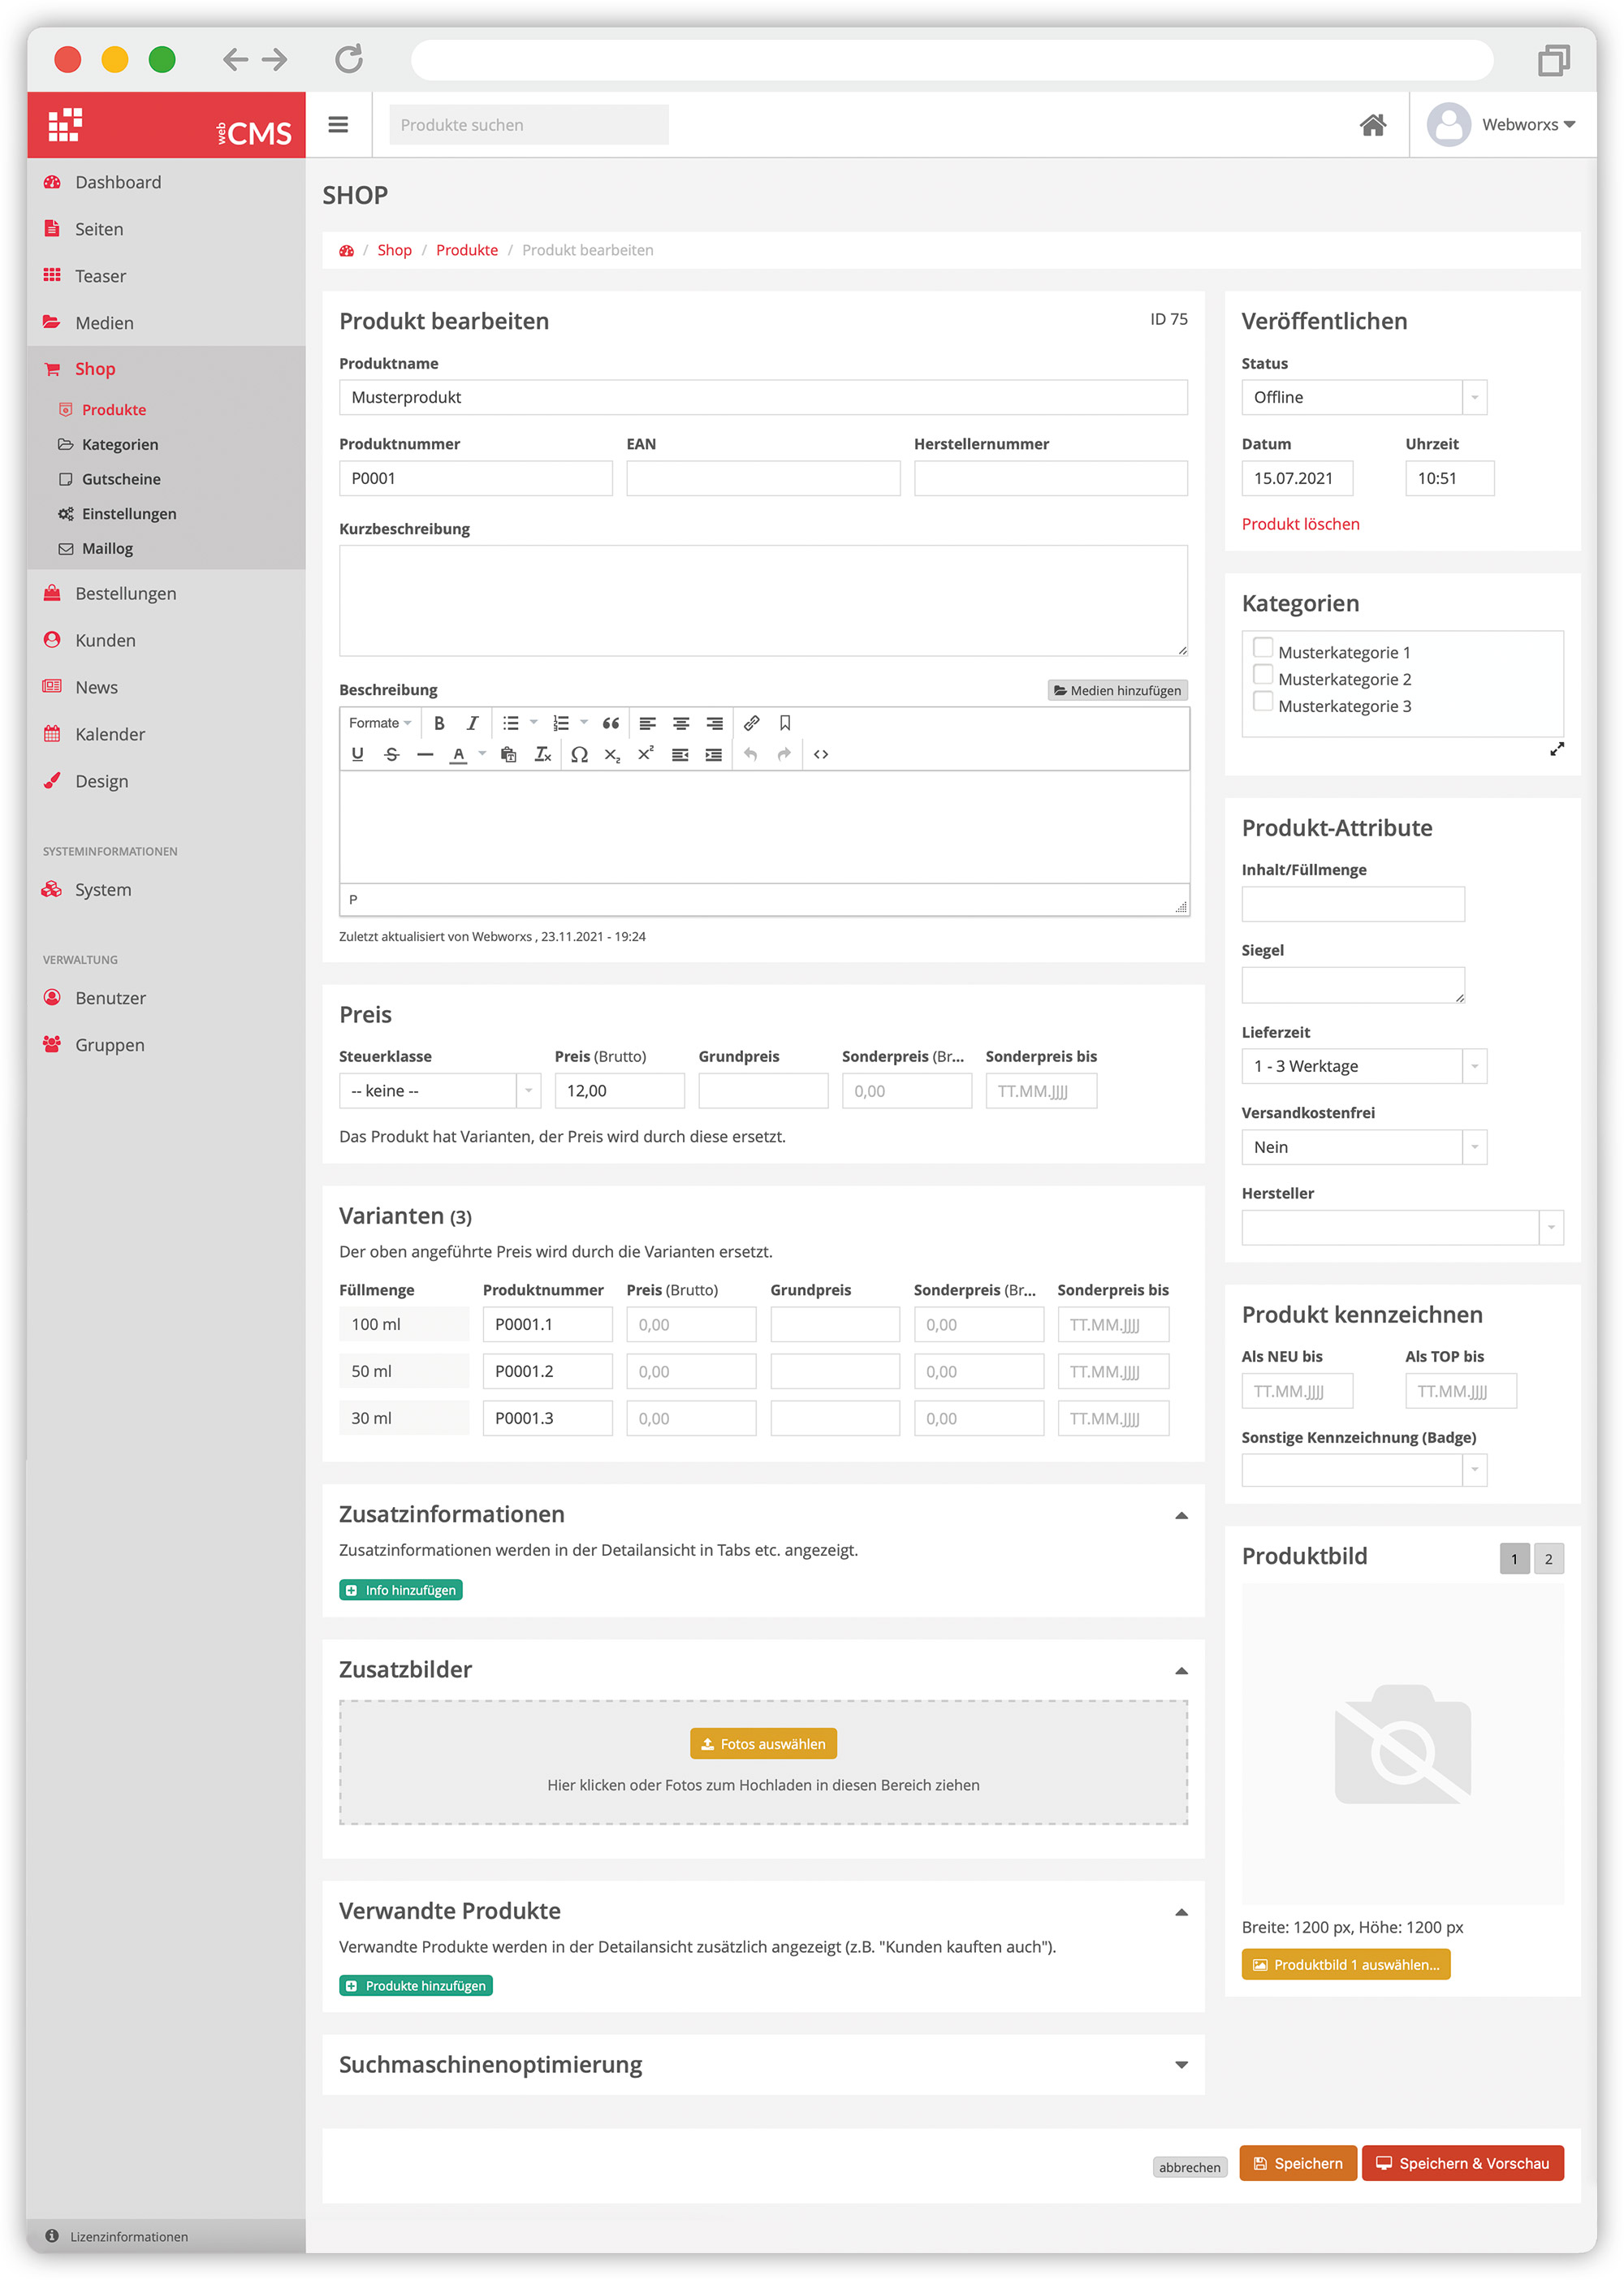 Screenshot webCMS 2.0 - Webshop Produktverwaltung